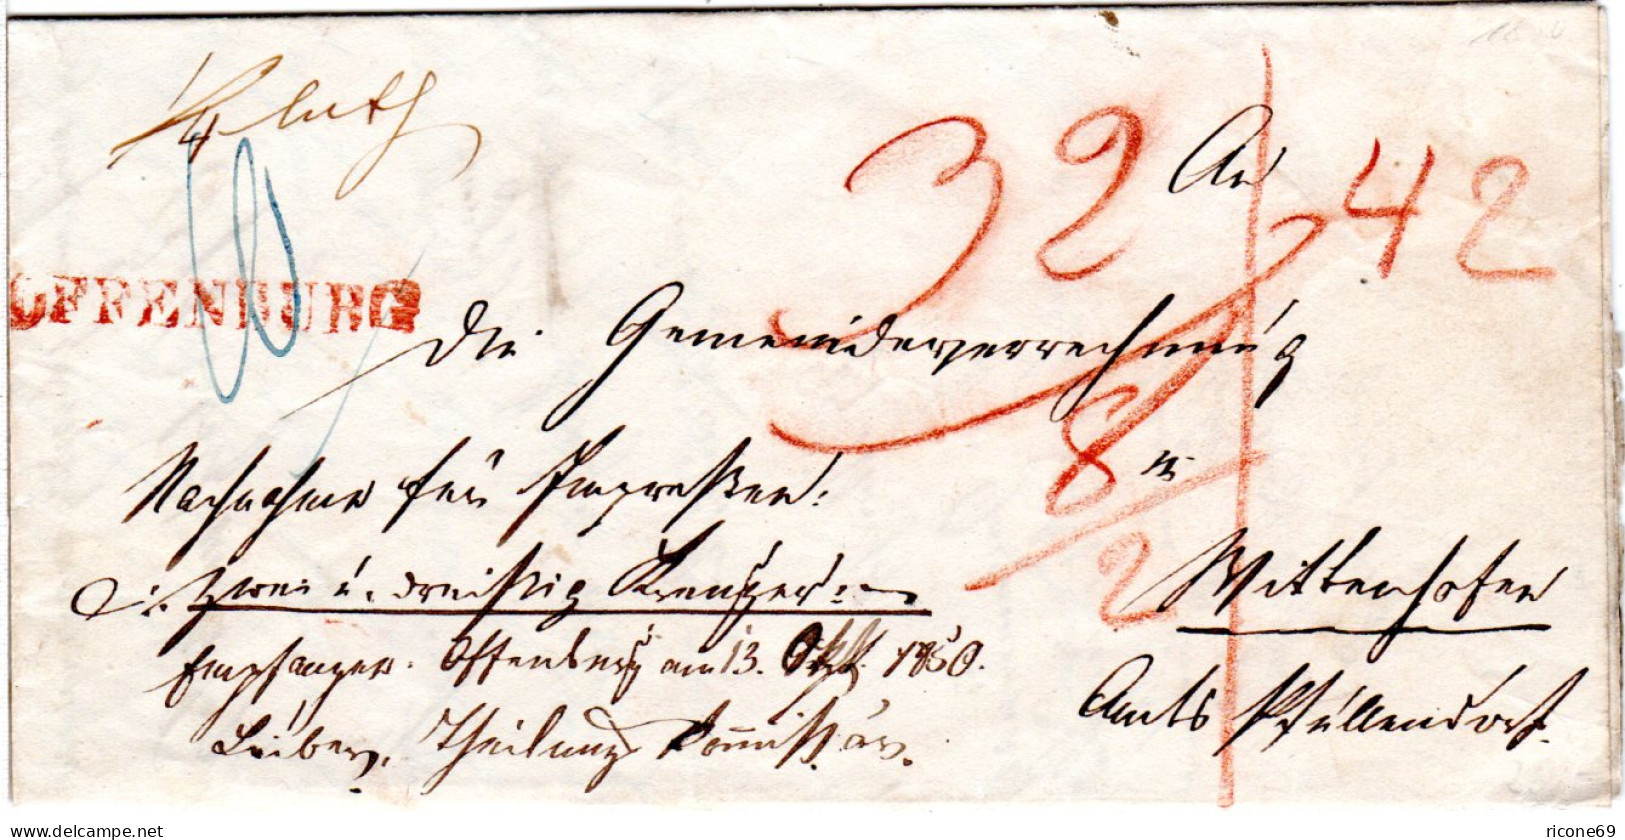 Baden 1850, Roter L1 OFFENBURG Auf Nachnahme Brief M. Botenlohn. - Prephilately